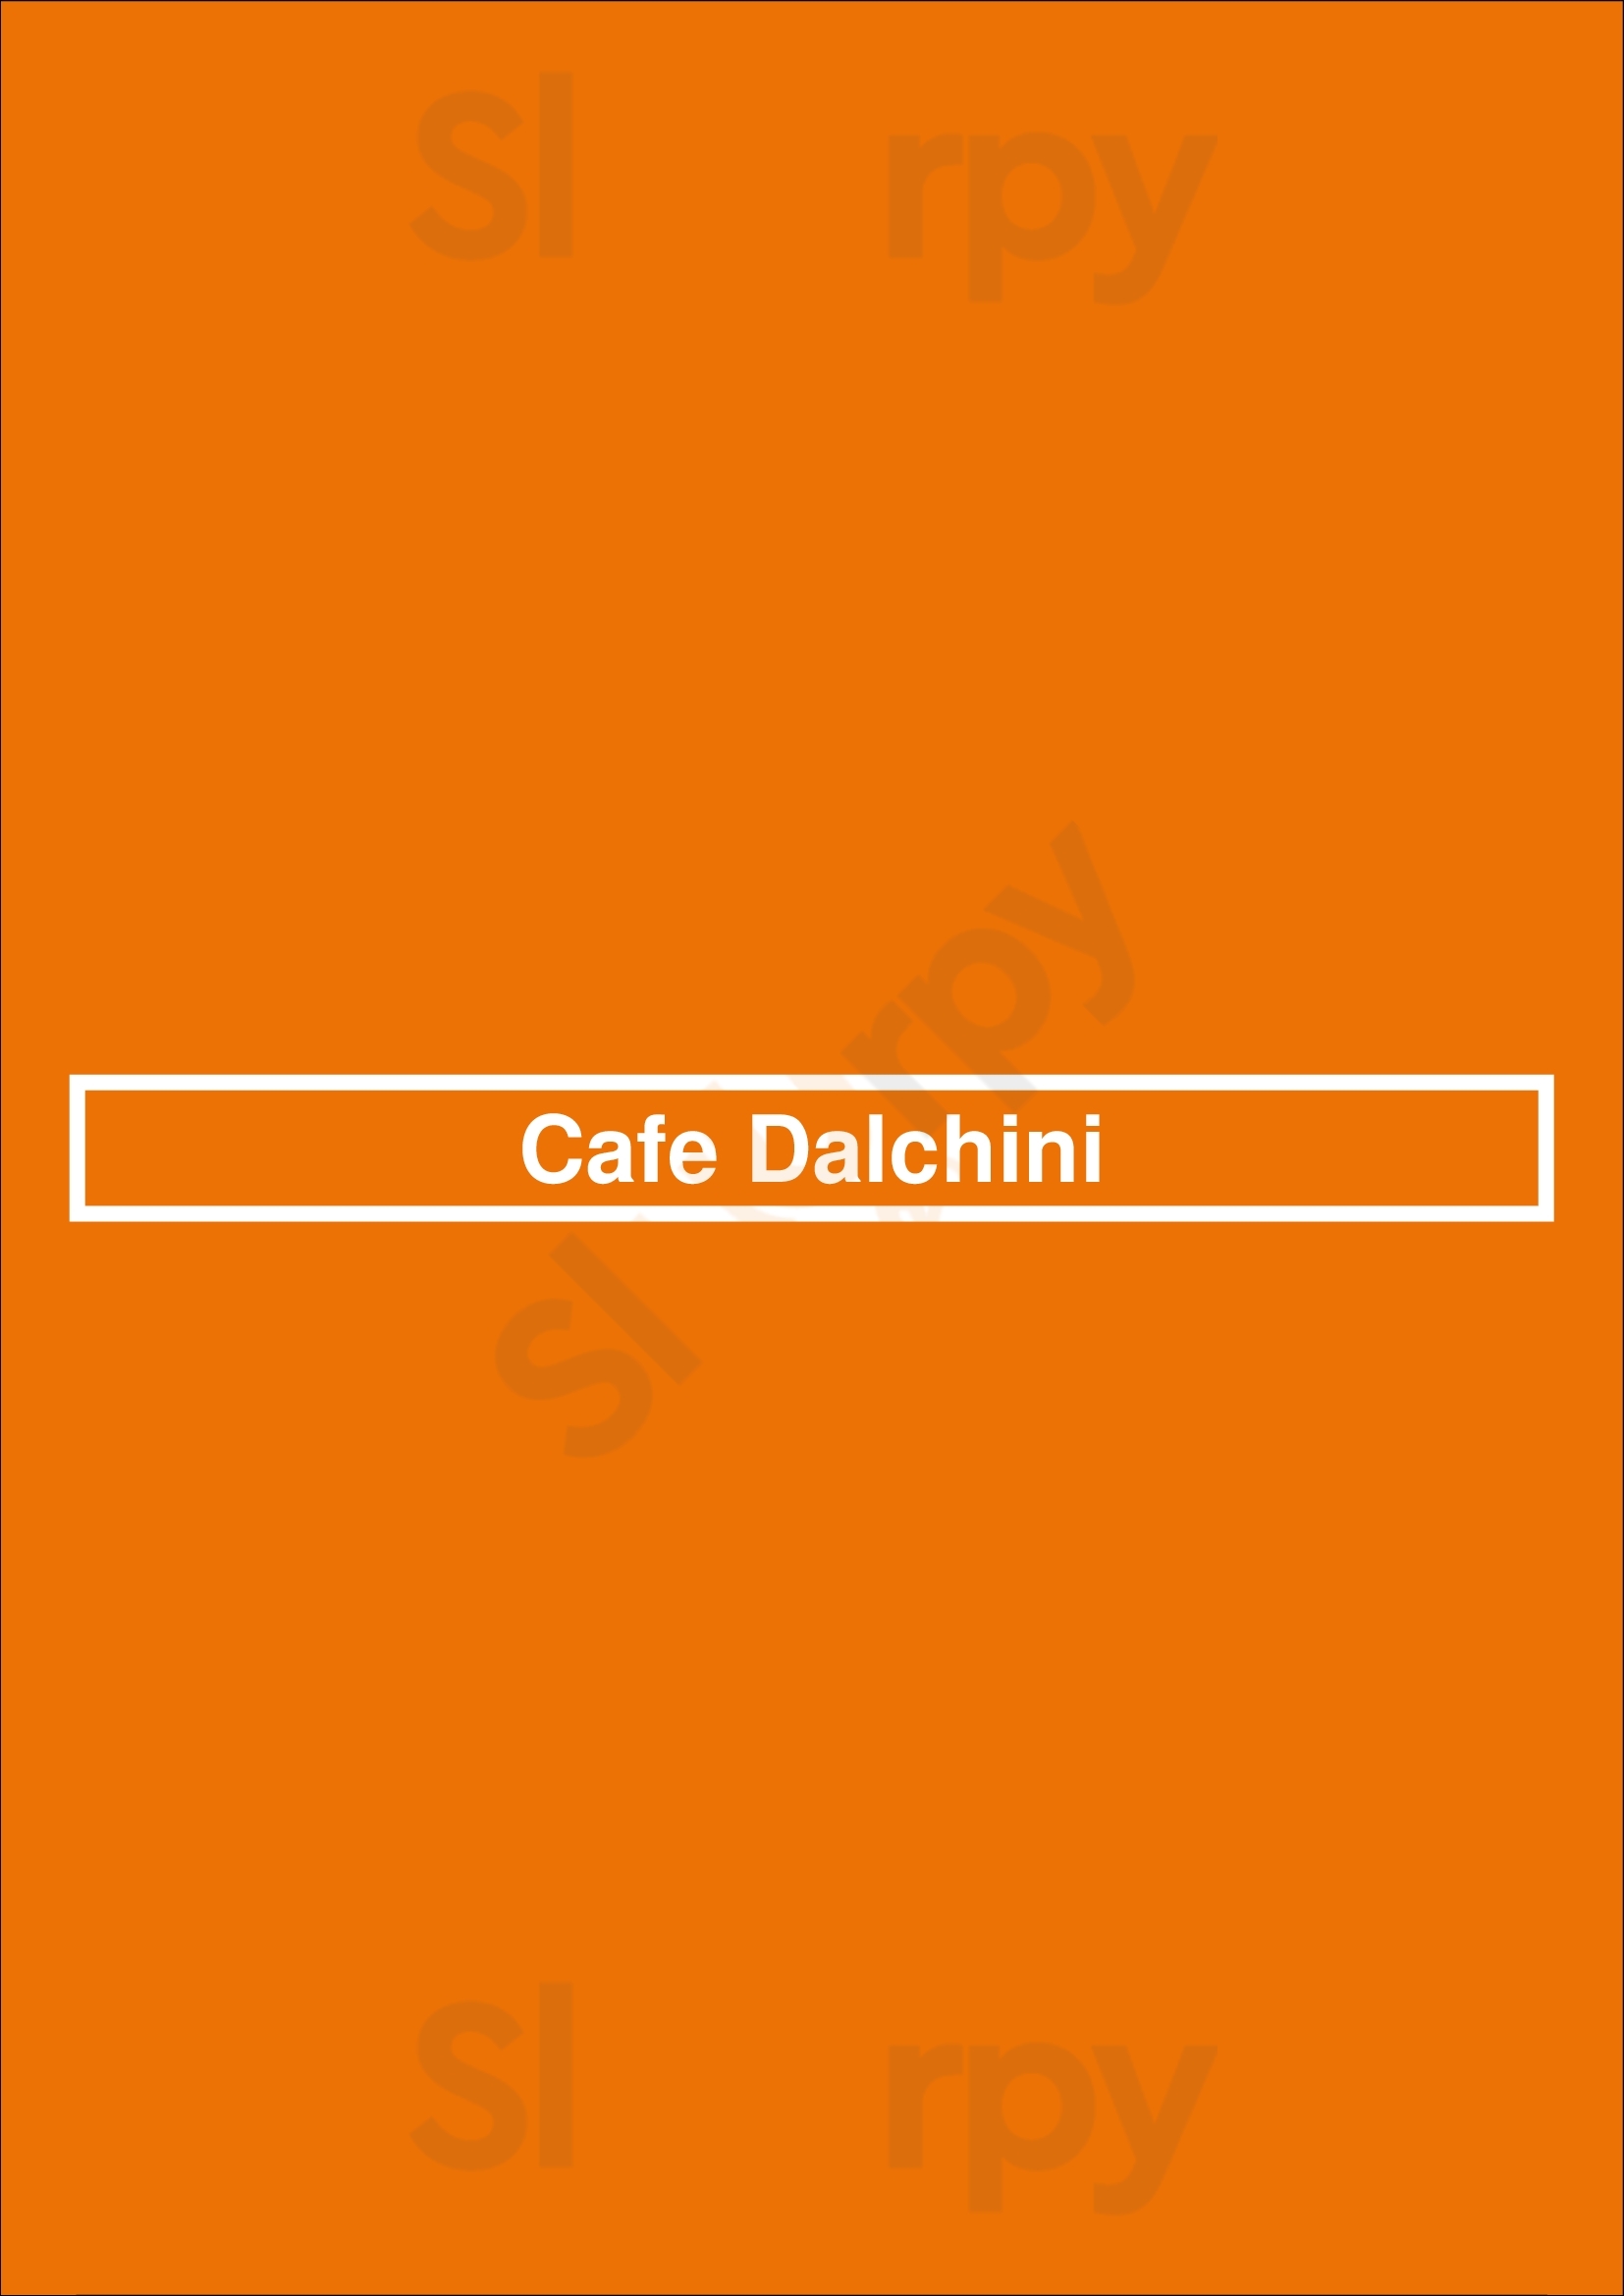 Cafe Dalchini Albury Menu - 1